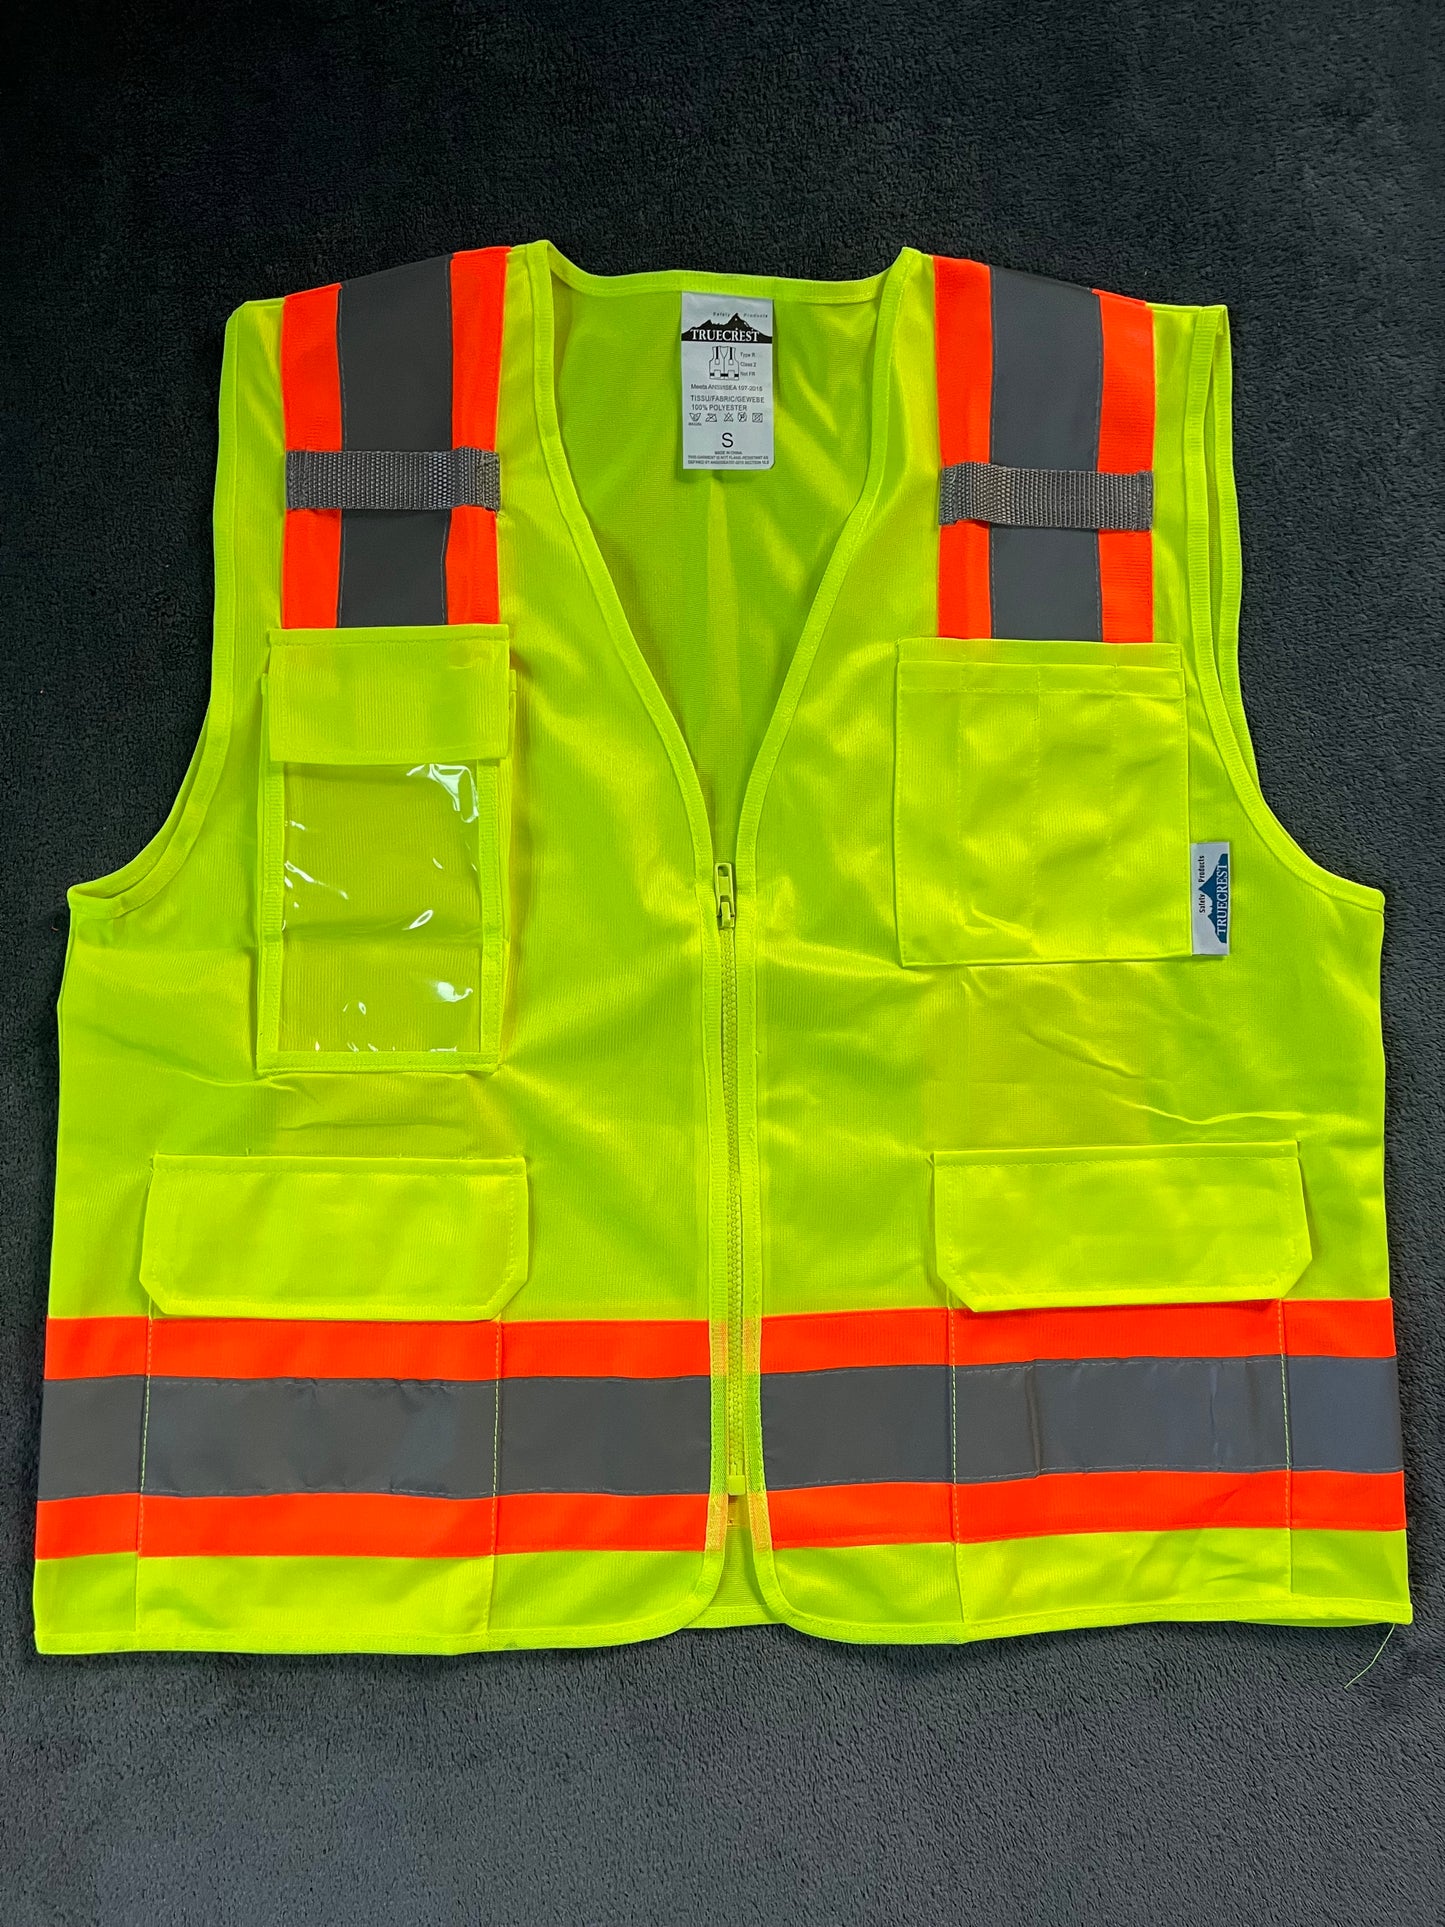 Work Vests